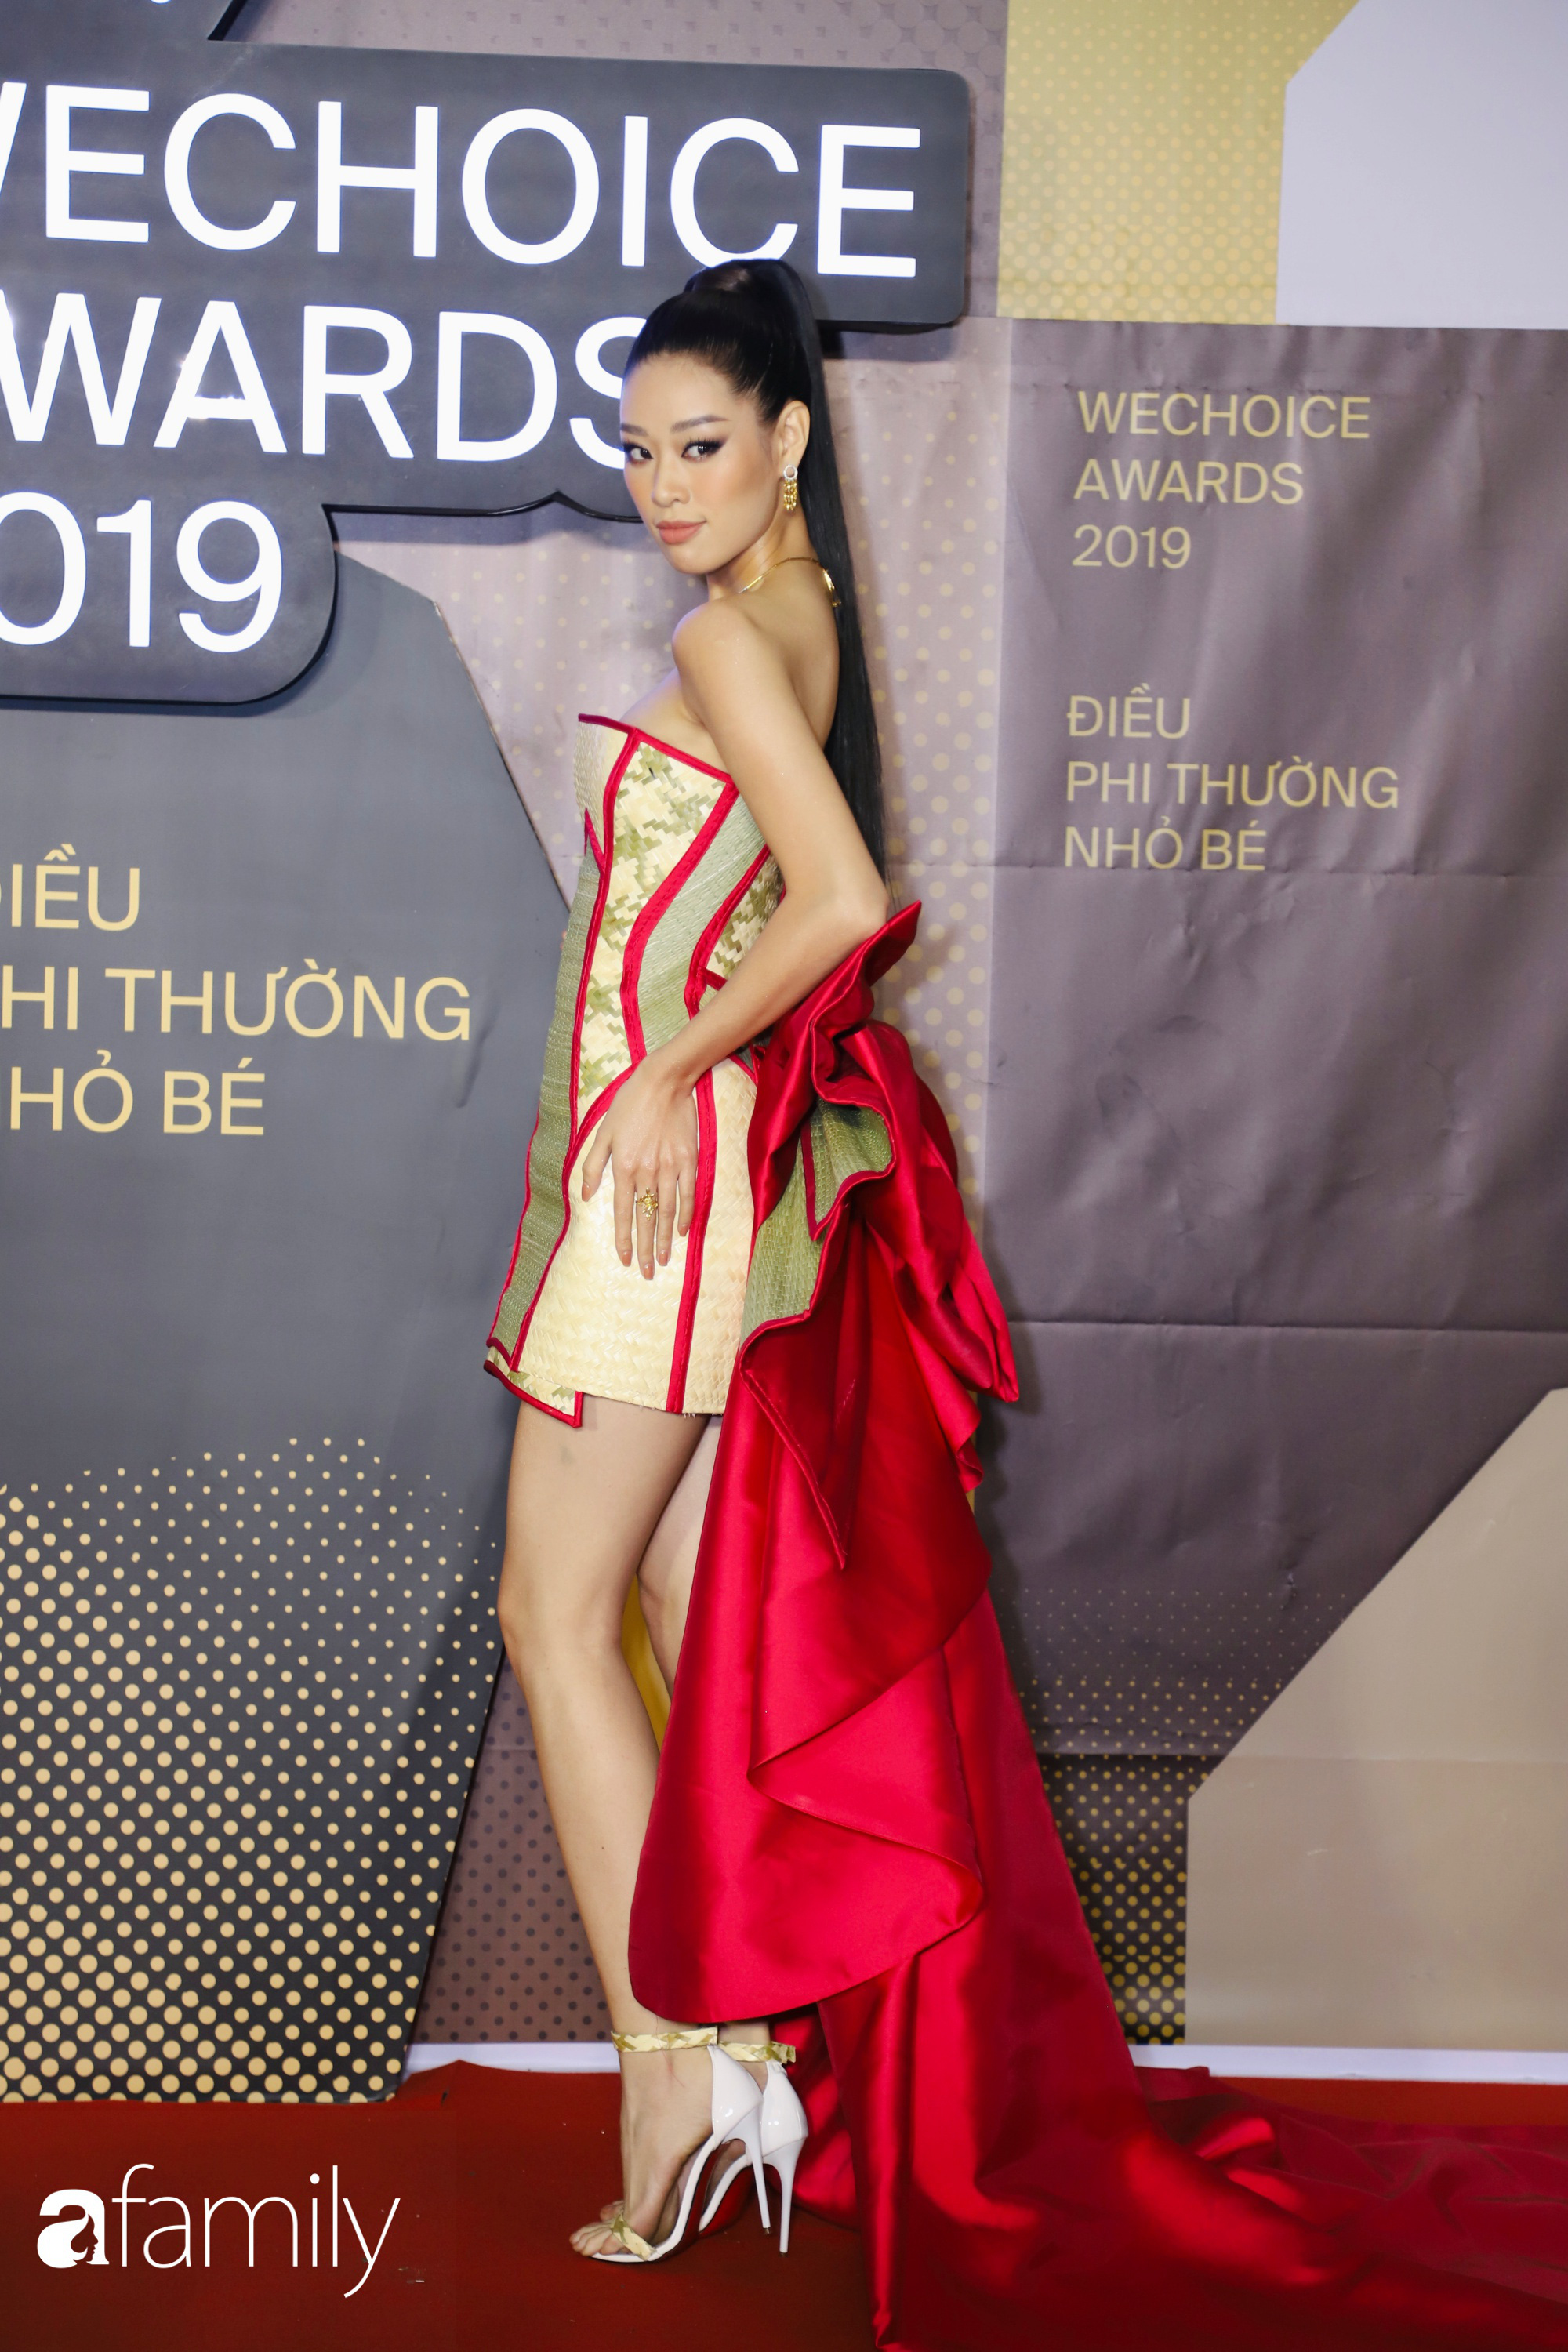 Hoa hậu Khánh Vân diện chiếu cói lên thảm đỏ WeChoice Awards, hóa ra nguồn cảm hứng từ chính tiền bối HHen Niê - Ảnh 2.